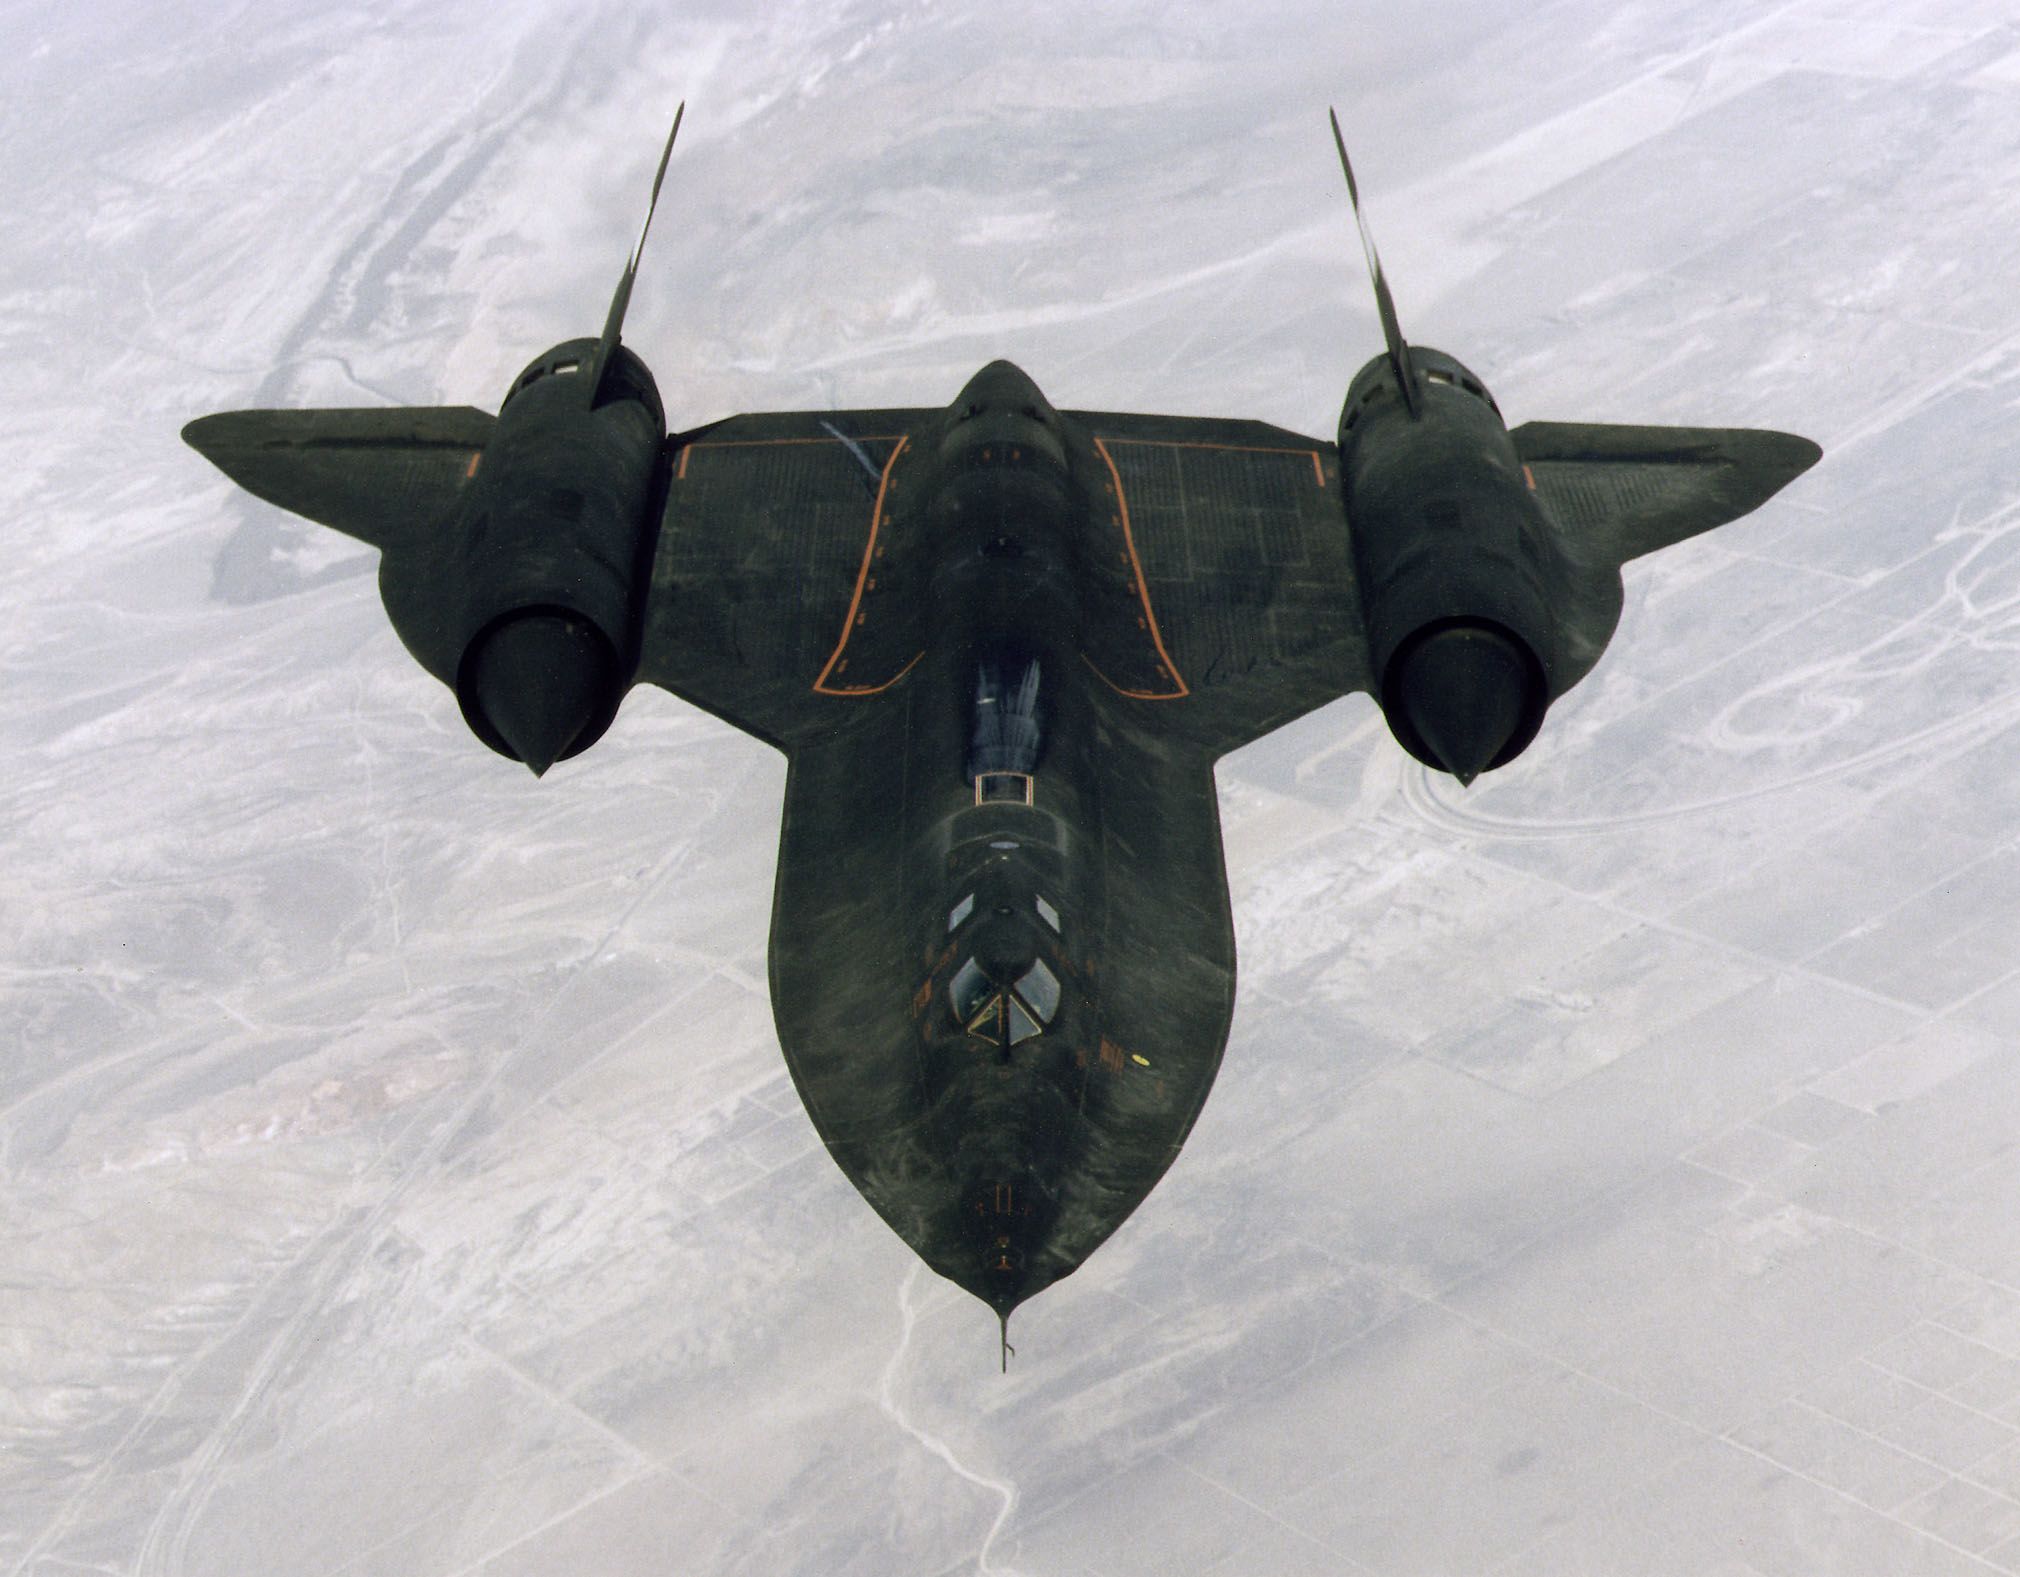 Gylden Ved navn deres SR-71 Blackbird: The Cold War spy plane that's still the world's fastest  airplane | CNN